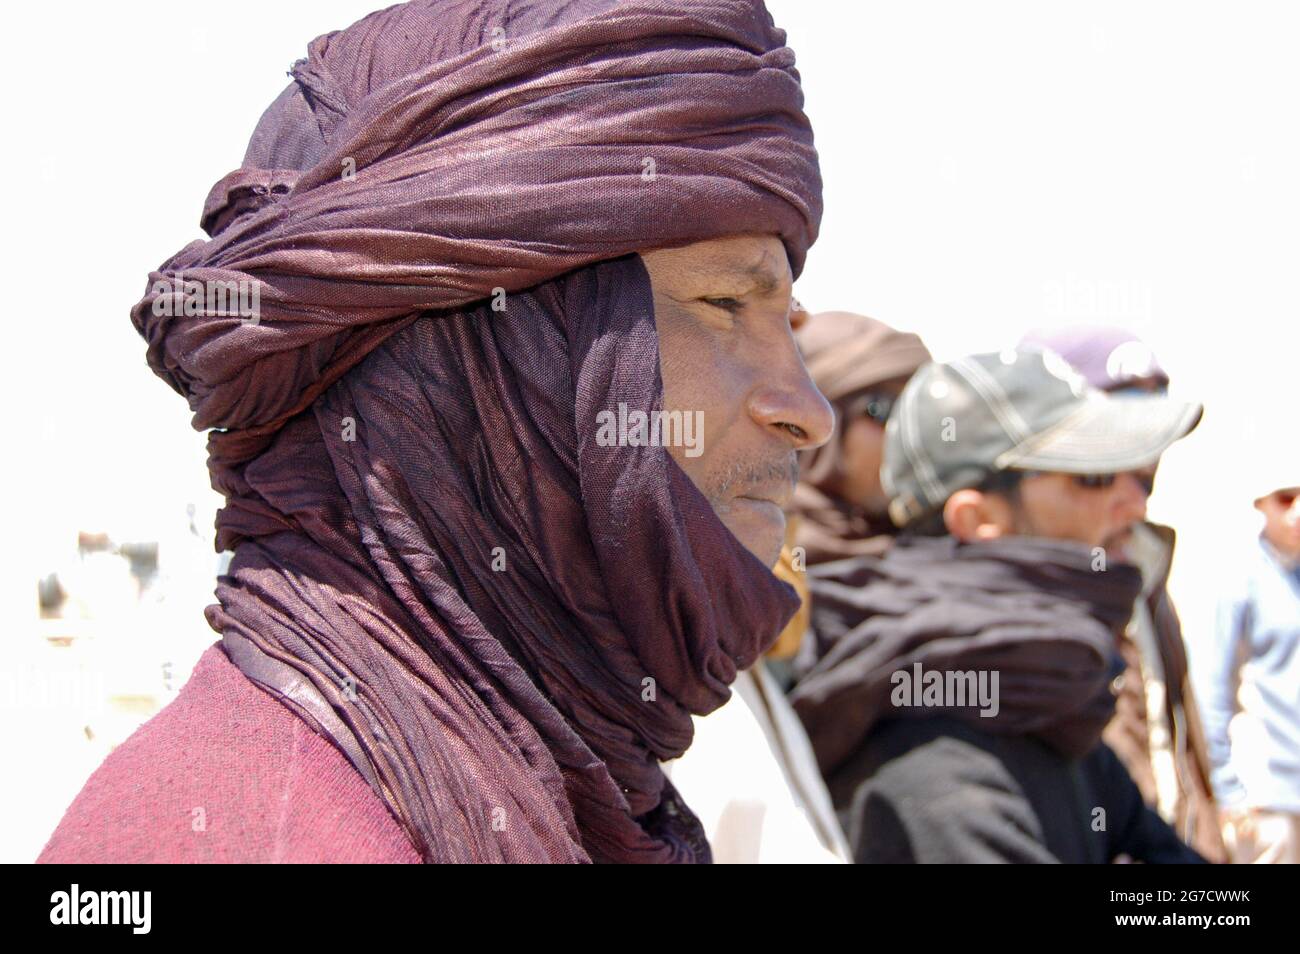 WAW al Kabir, Libyen - 29. März 2006: Ein Tuareg-Fahrer in traditionellen Roben, um mit der Sonne und dem Sand in der Sahara in Libyen fertig zu werden. Stockfoto